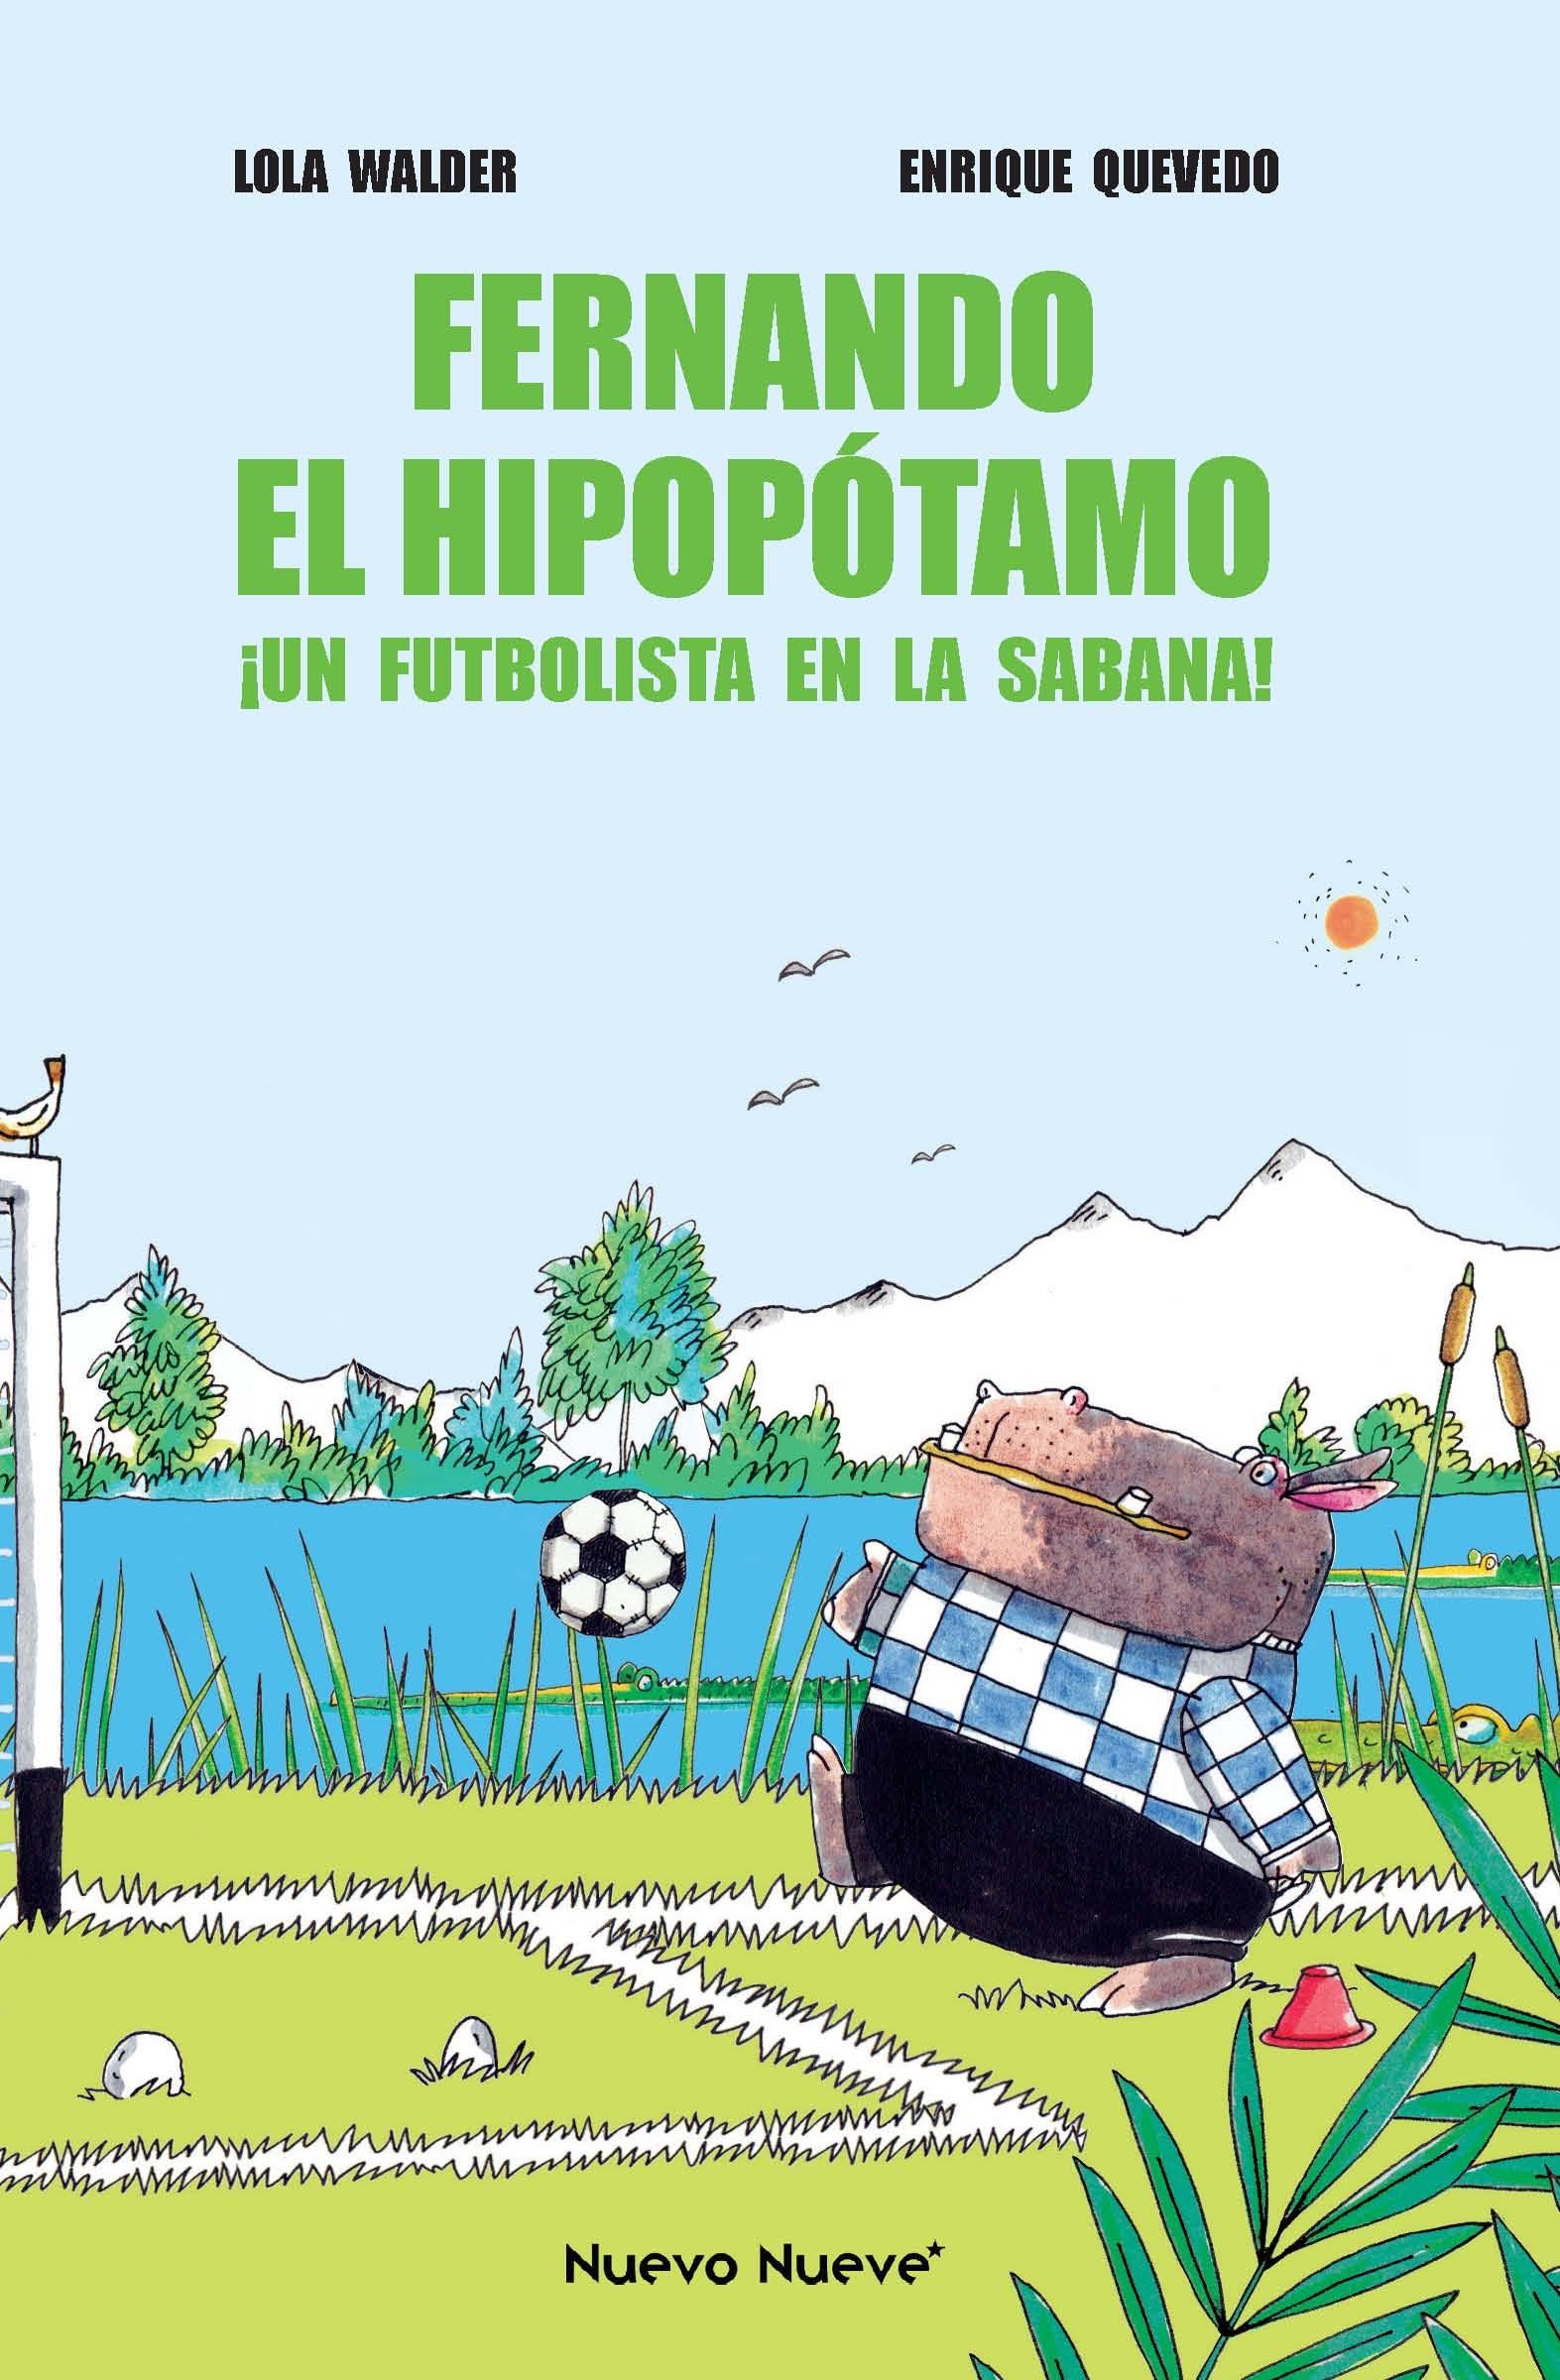 Fernando el Hipopótamo "¡Un Futbolista en la Sabana!"